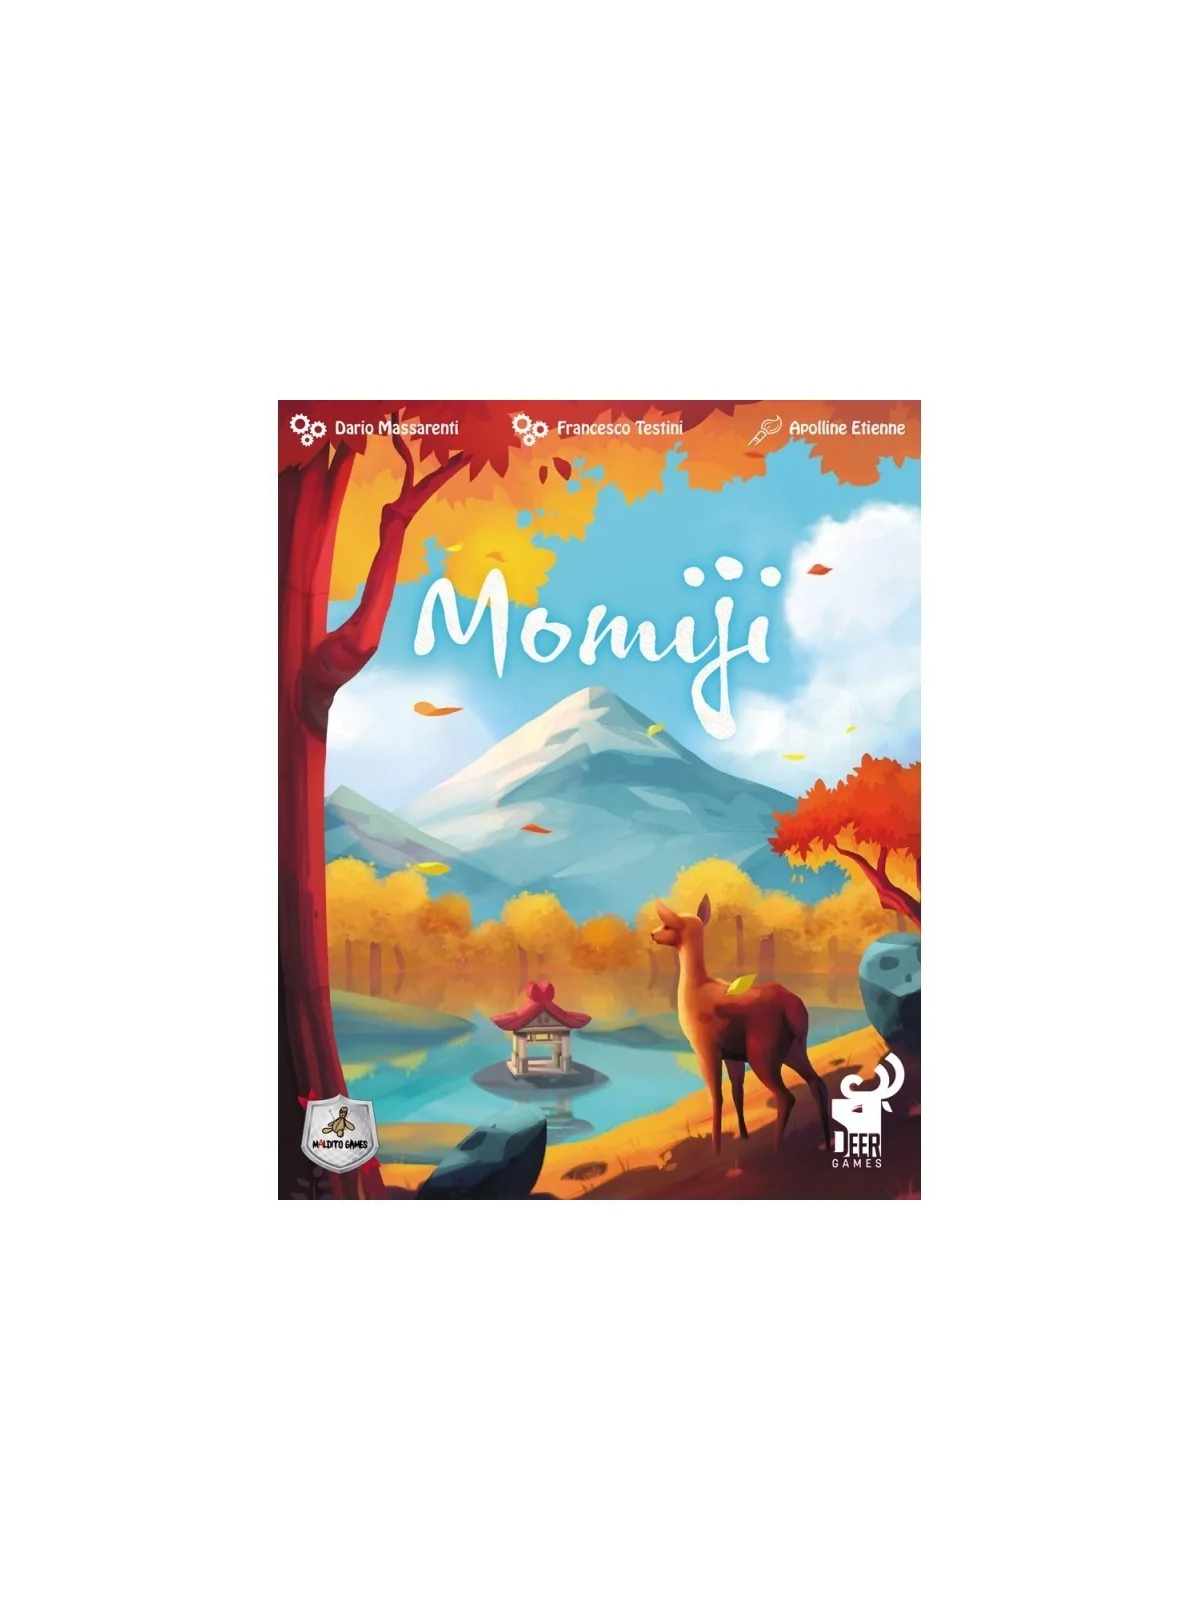 Comprar Momiji barato al mejor precio 18,00 € de Maldito Games